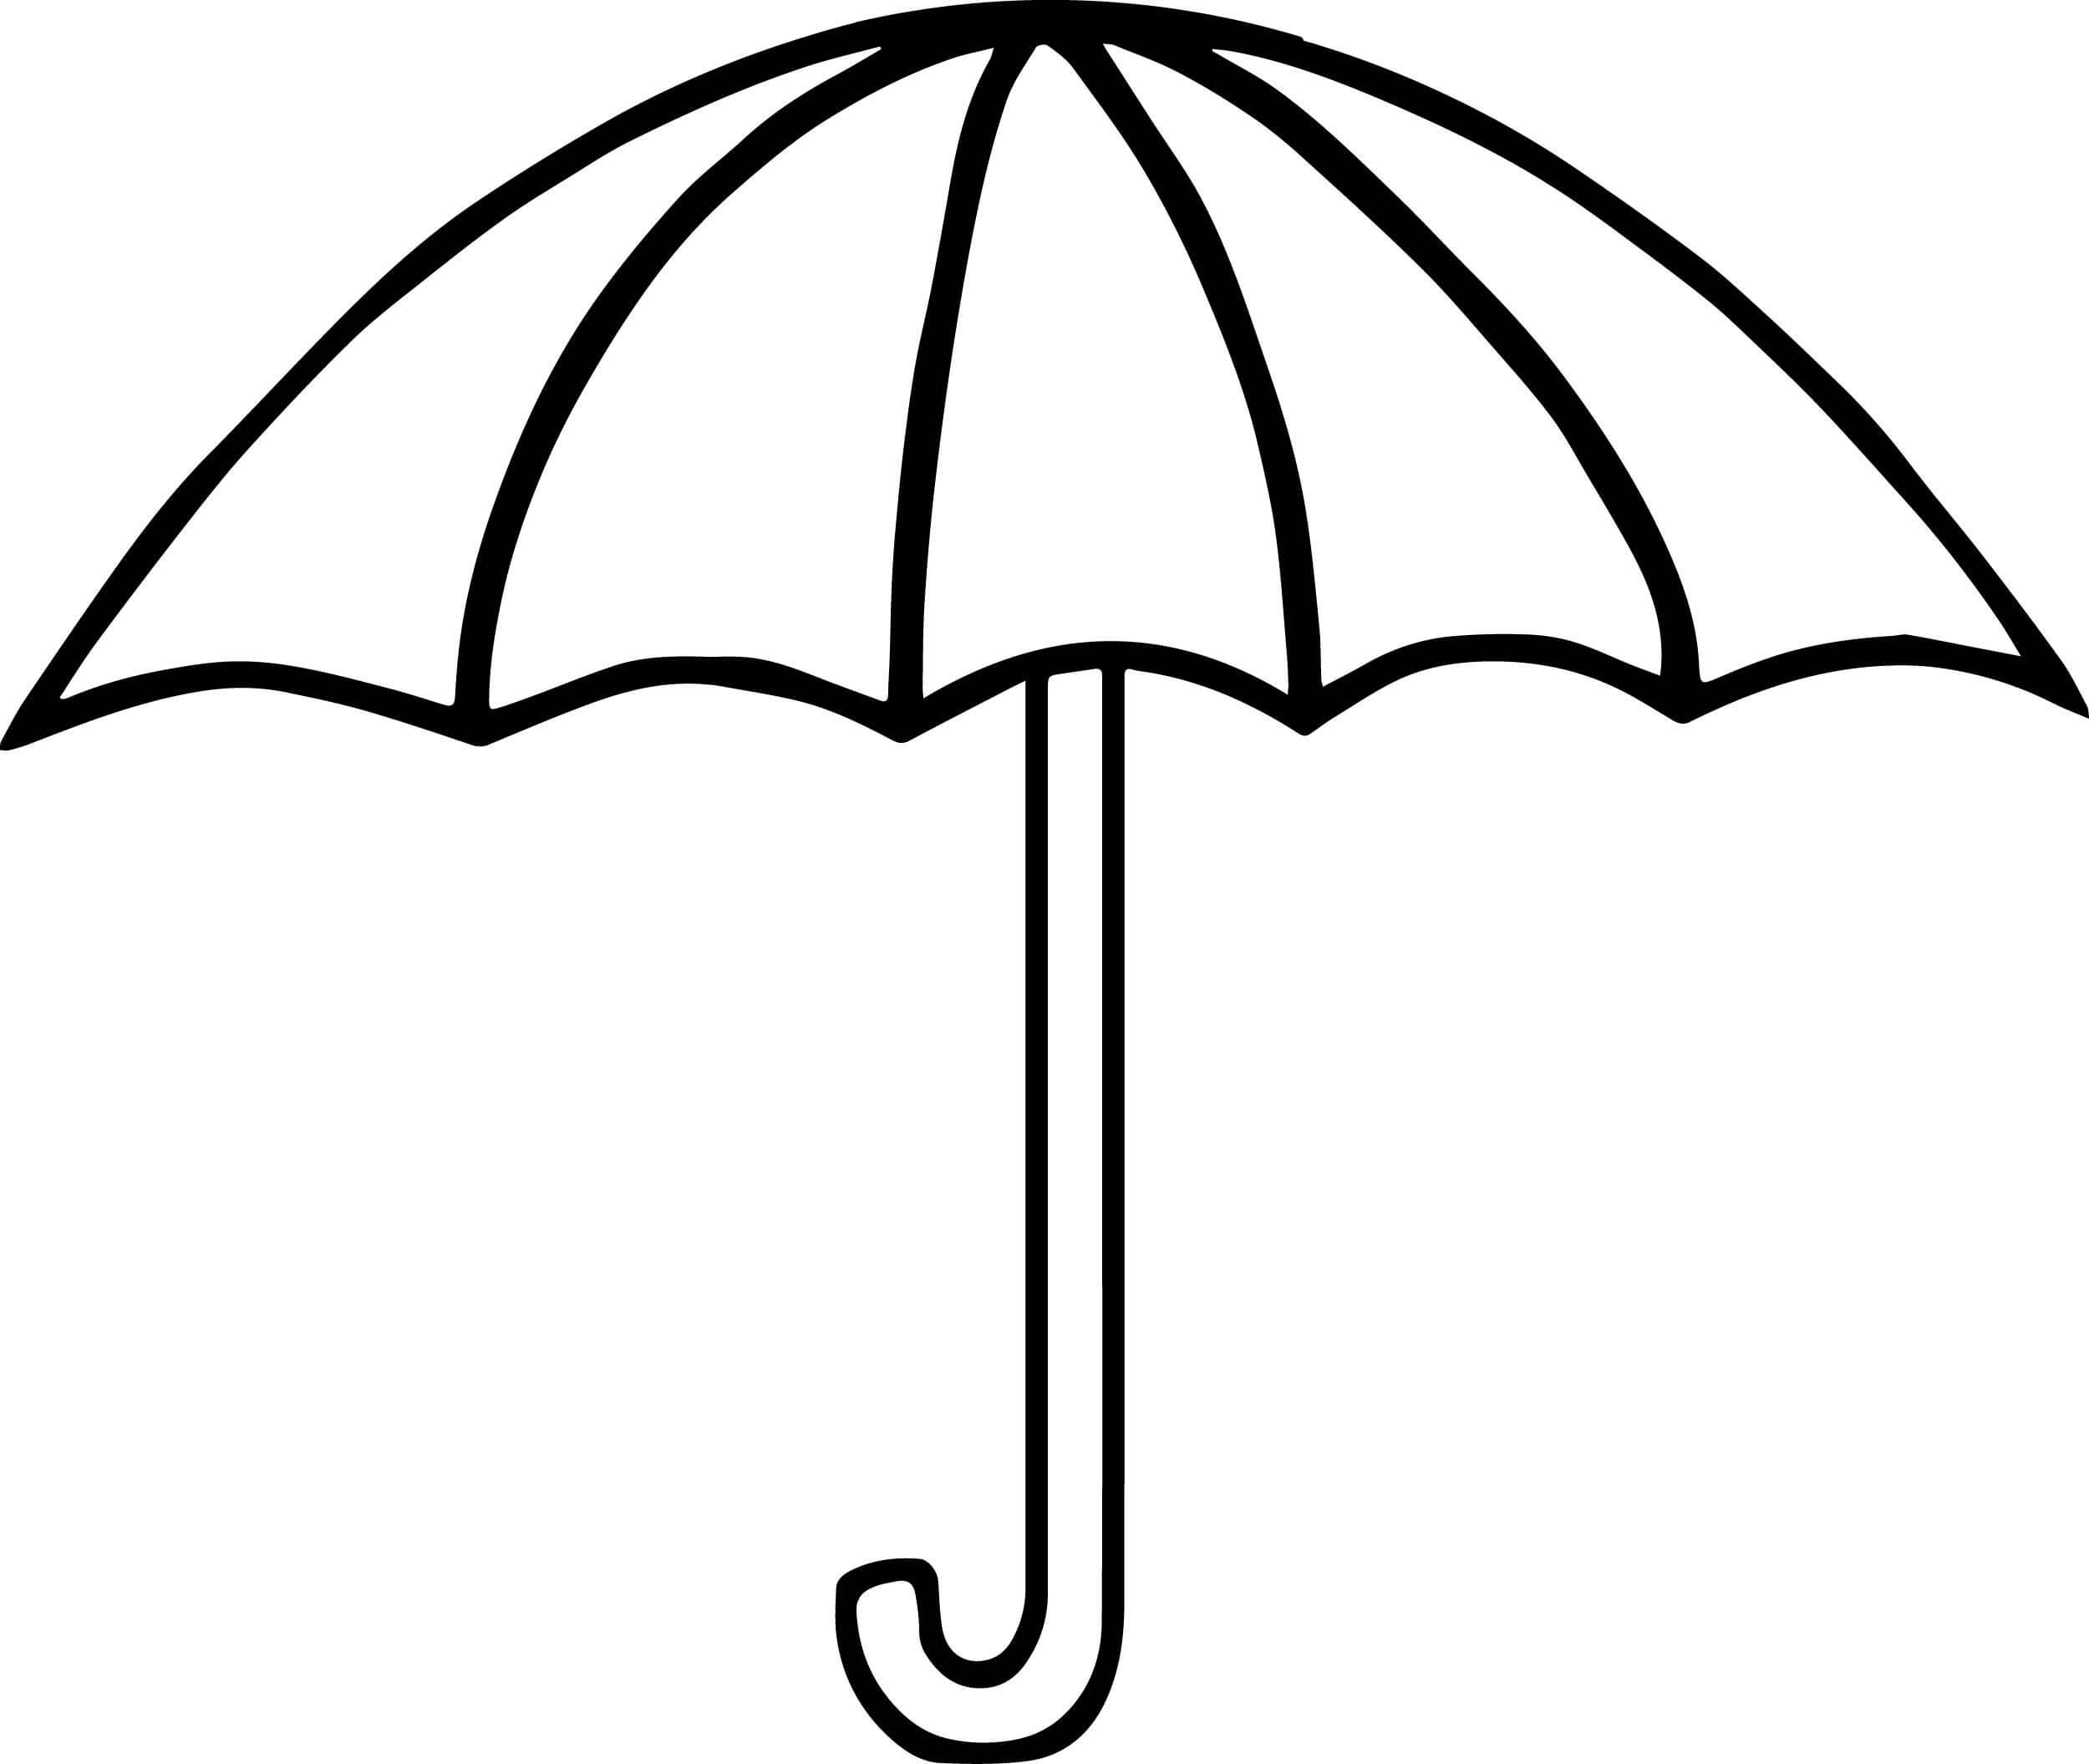 Imagens Gratuitas de Guarda-chuva para colorir